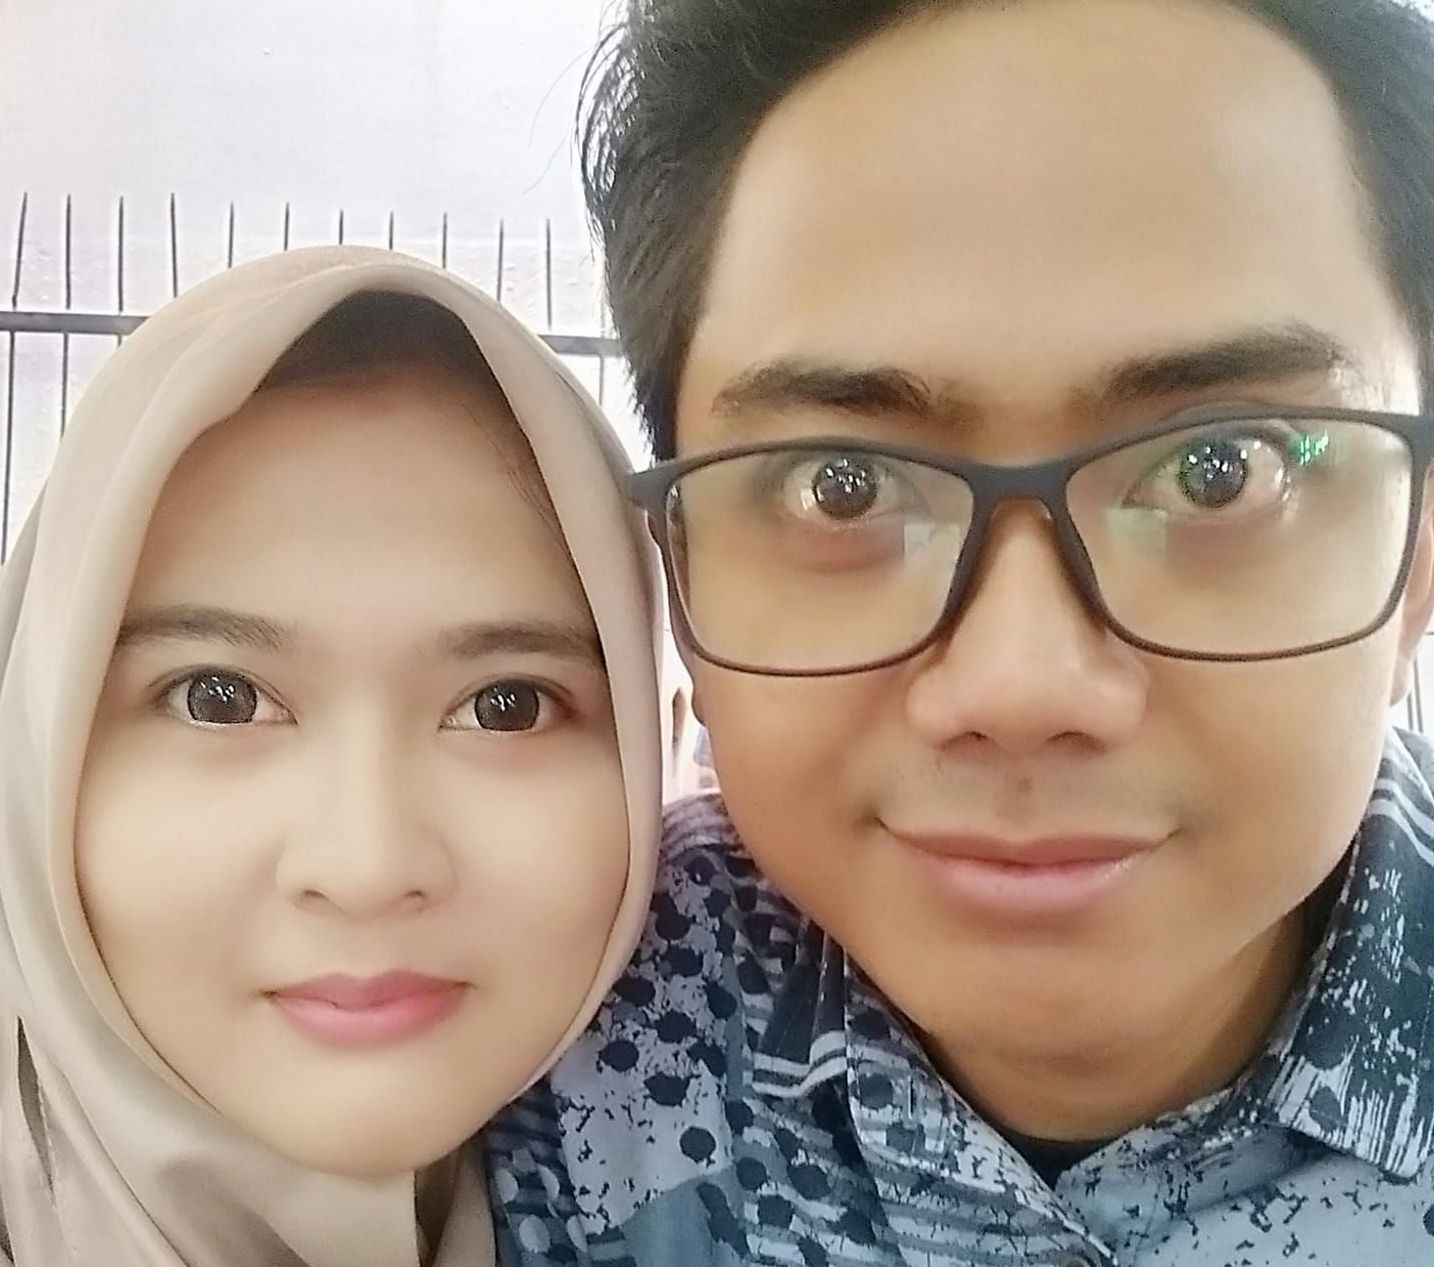 Suci Fitri bersama sang kekasih almarhum Yodi Prabowo, editor Metro TV yang kematiannya menimbulkan misteri.*/Facebook/Suci Fitri Rohmah